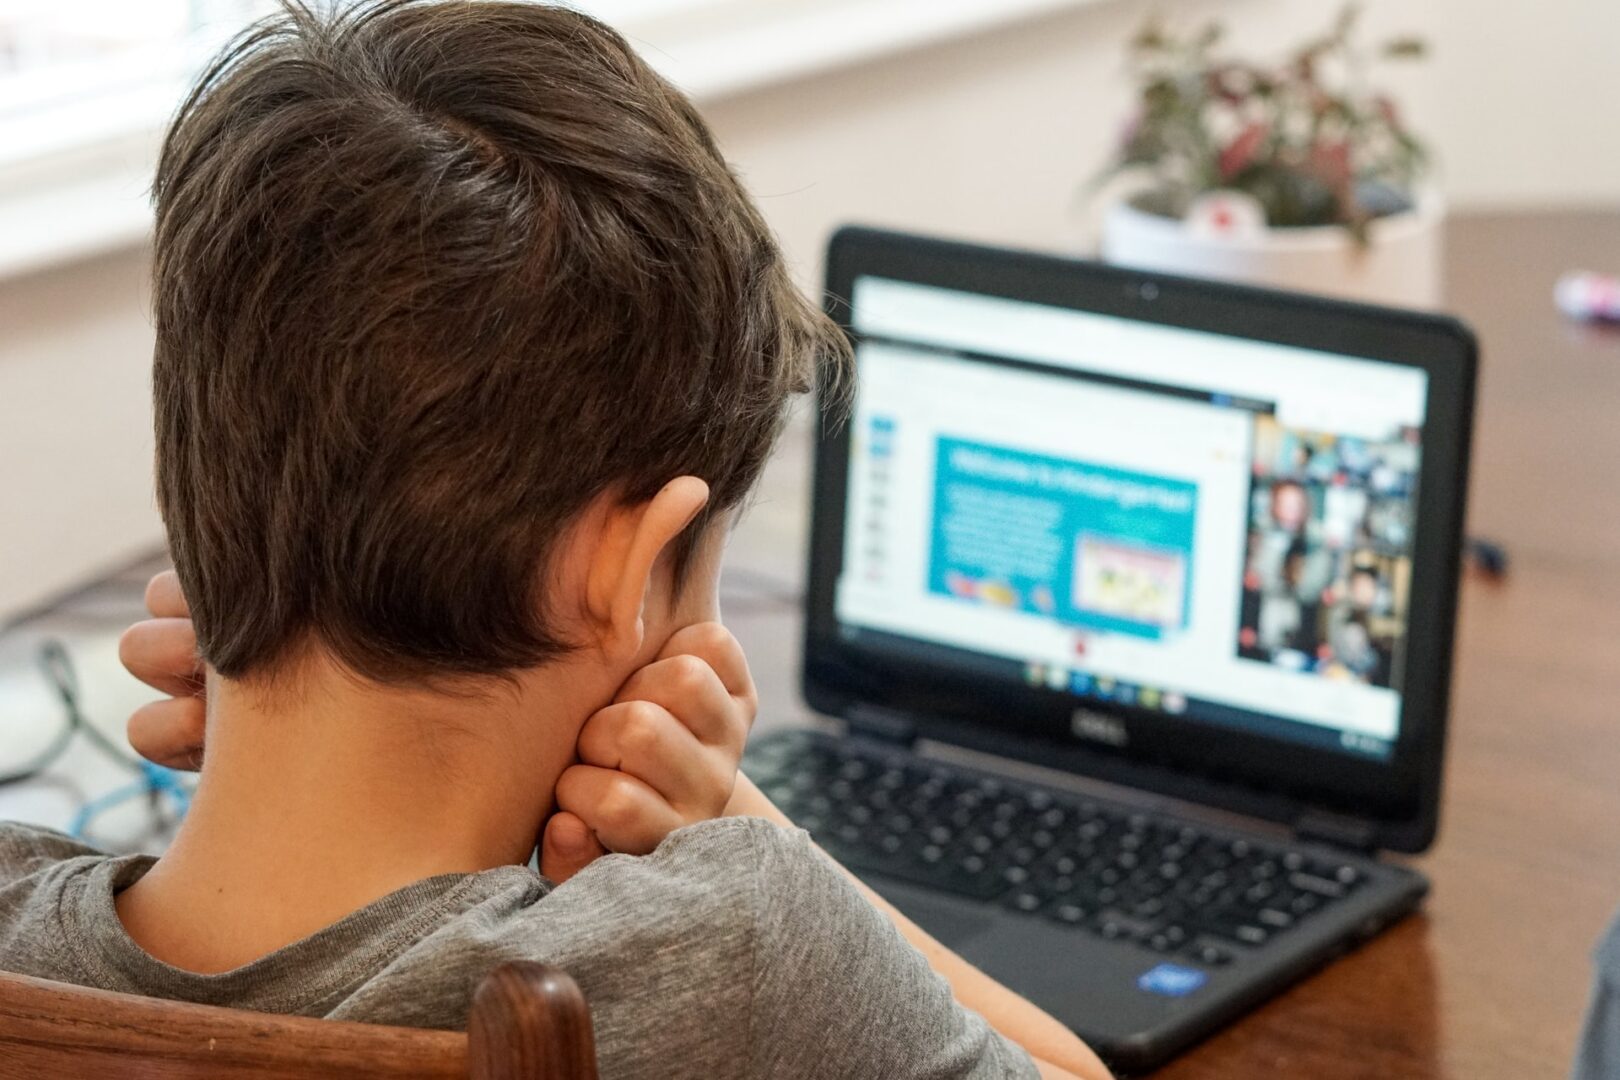 Είναι το παιδί σας ασφαλές στο διαδίκτυο; Δείτε πώς να το προστατέψετε